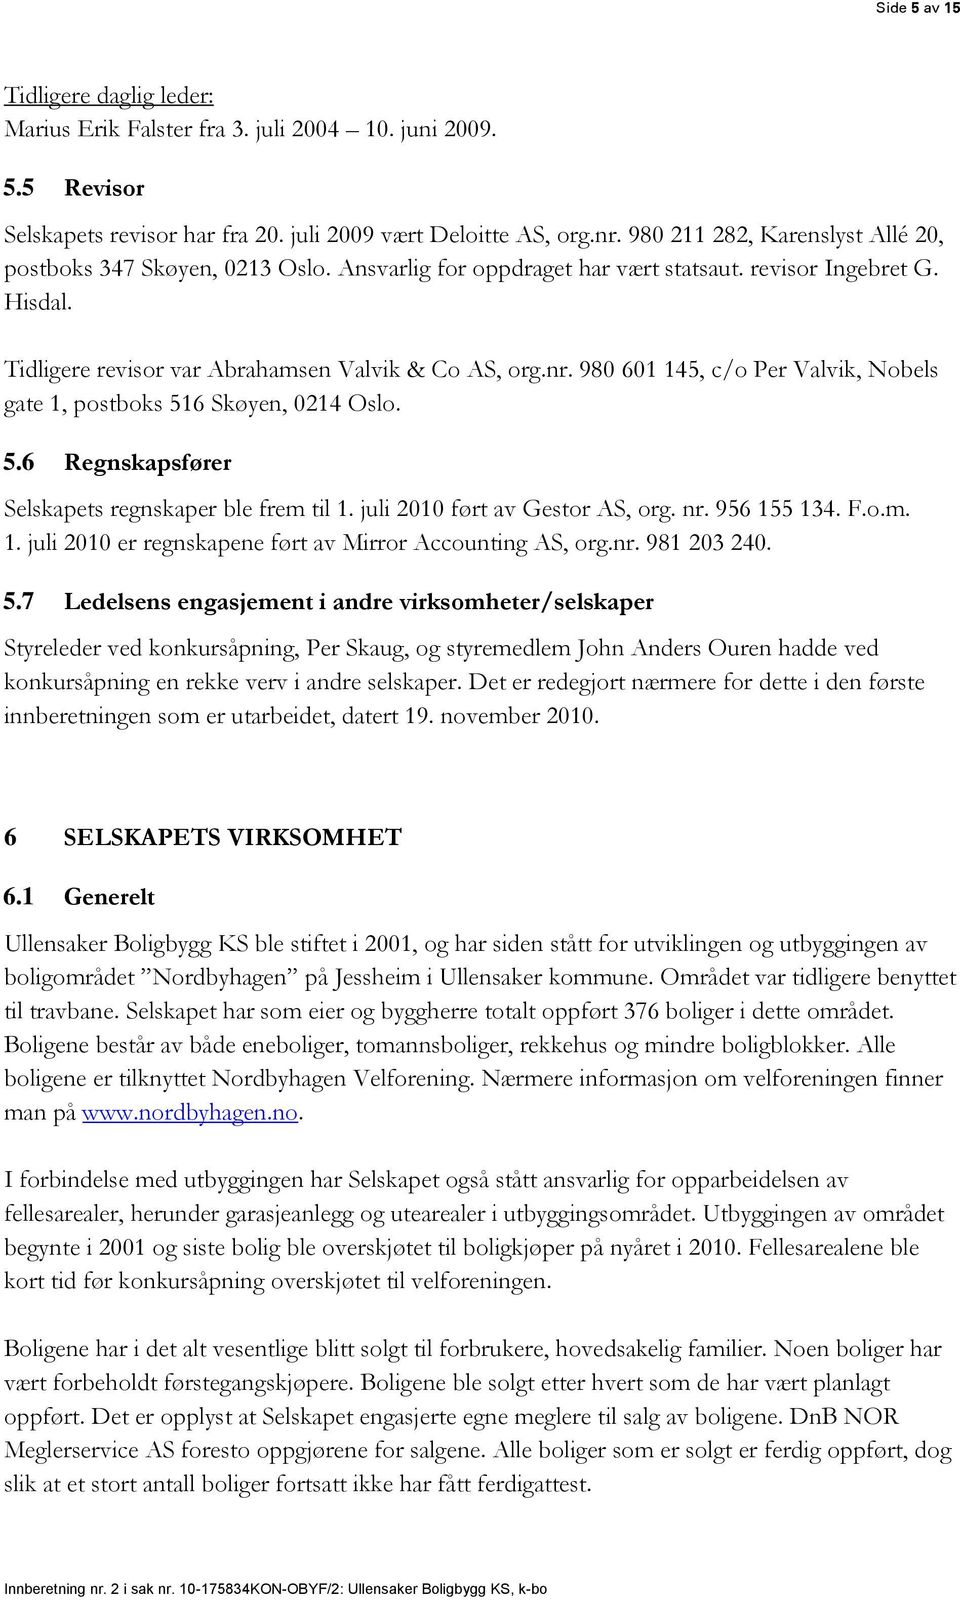 980 601 145, c/o Per Valvik, Nobels gate 1, postboks 516 Skøyen, 0214 Oslo. 5.6 Regnskapsfører Selskapets regnskaper ble frem til 1. juli 2010 ført av Gestor AS, org. nr. 956 155 134. F.o.m. 1. juli 2010 er regnskapene ført av Mirror Accounting AS, org.